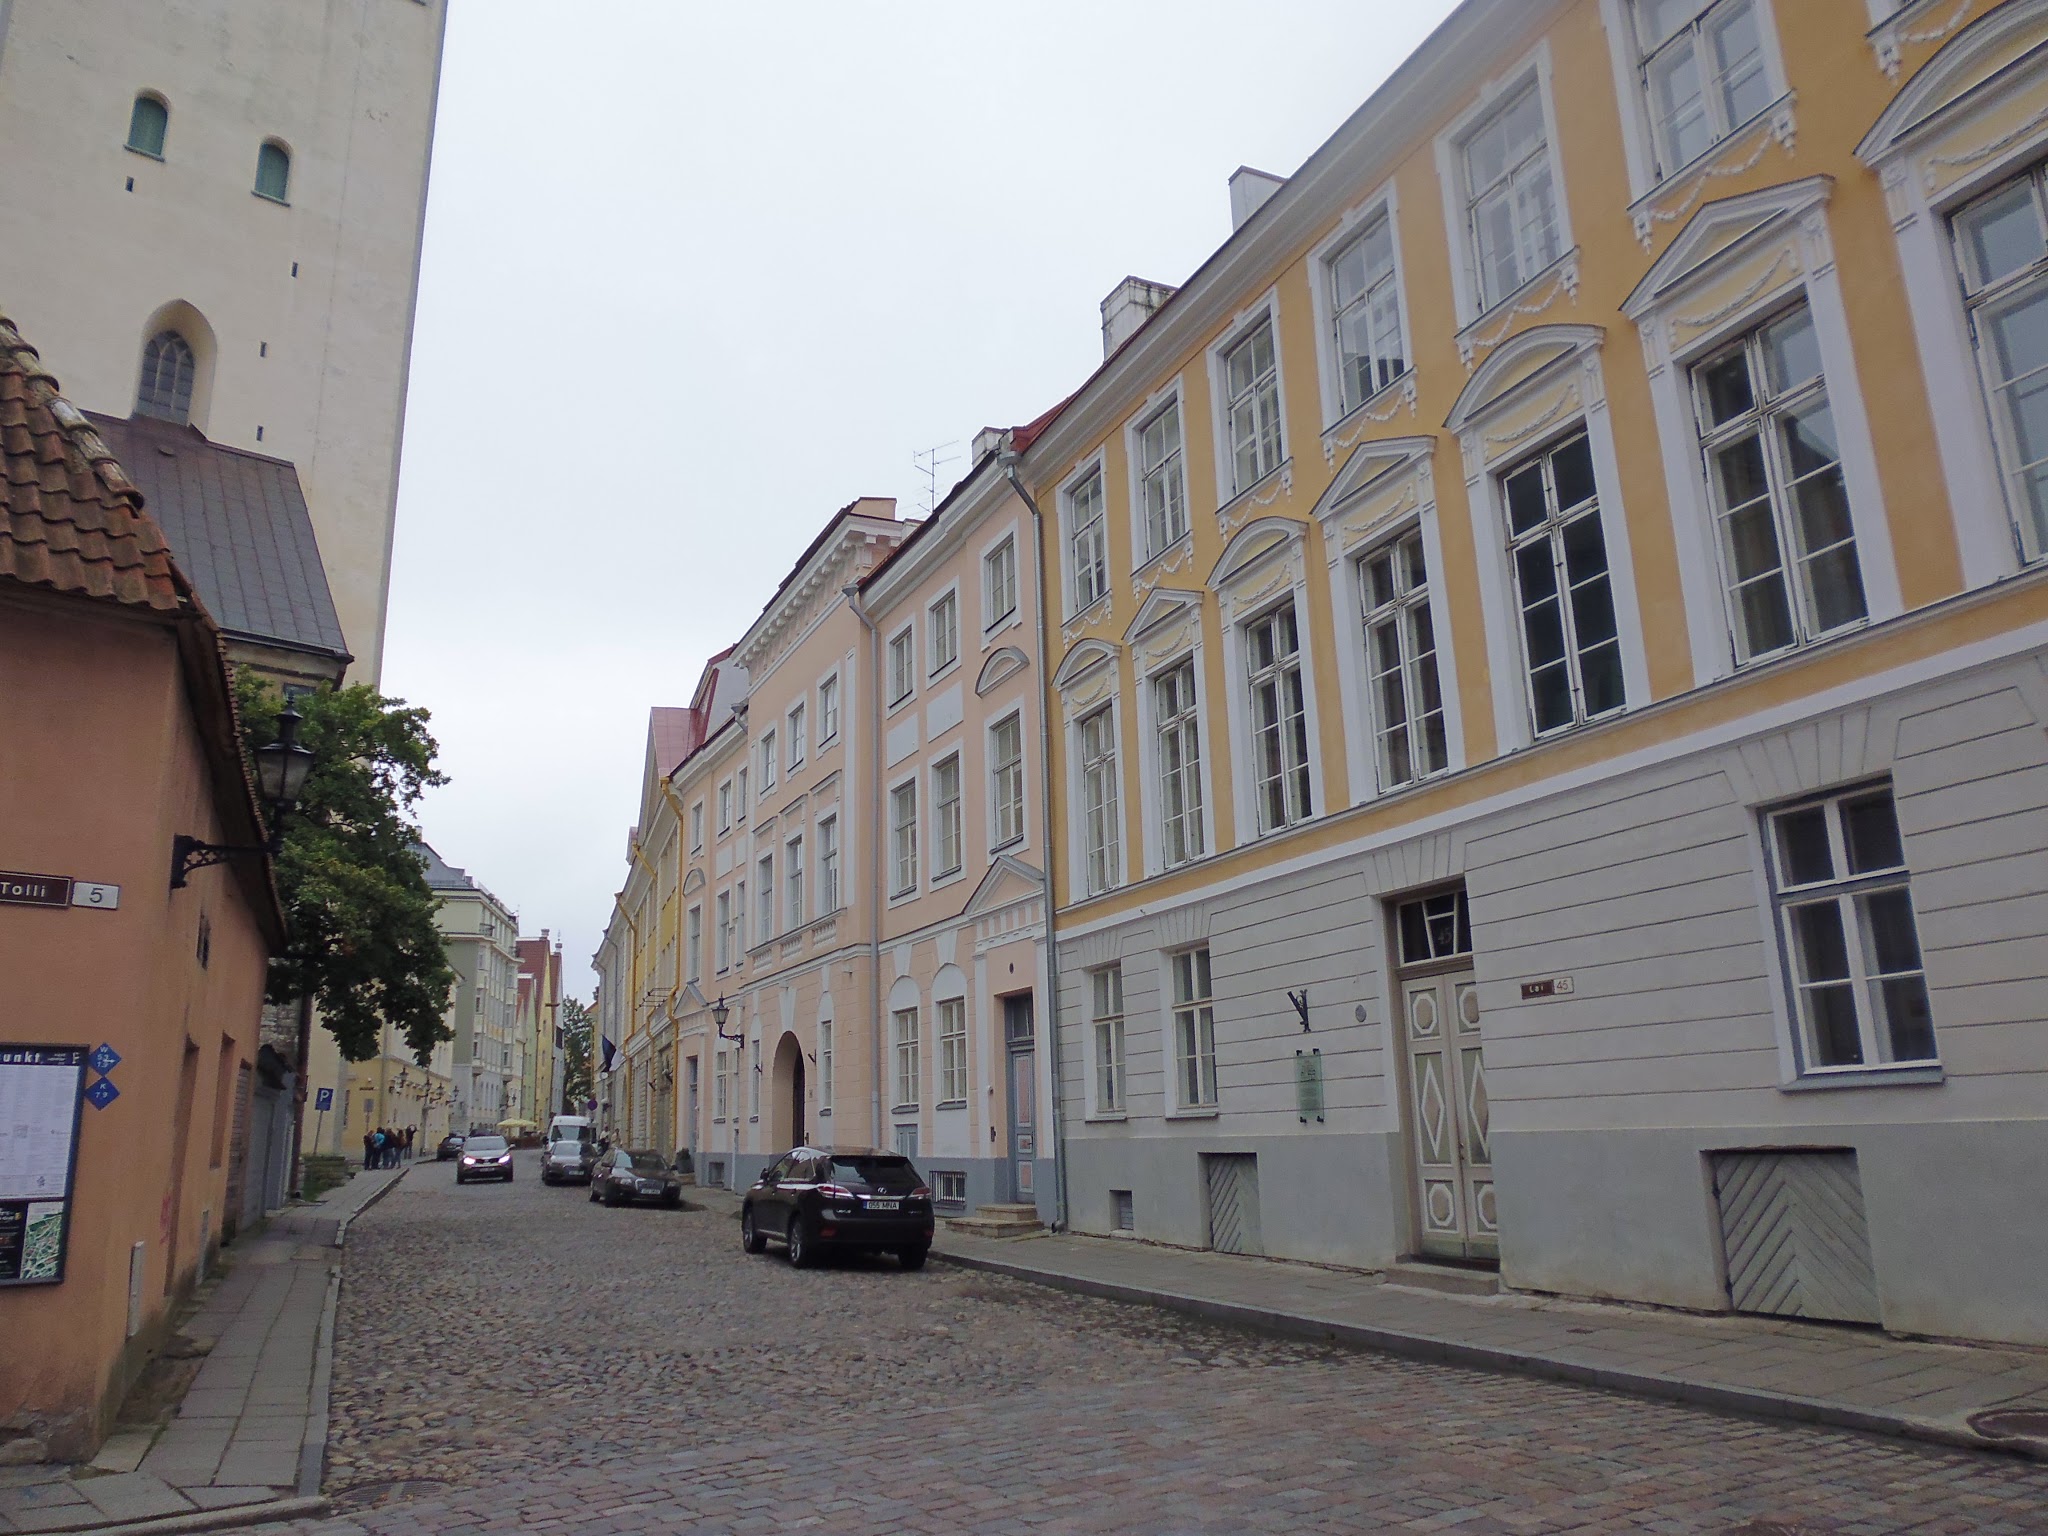 Calle Lai o calle ancha, una de las calles principales de Tallinn (@mibaulviajero)